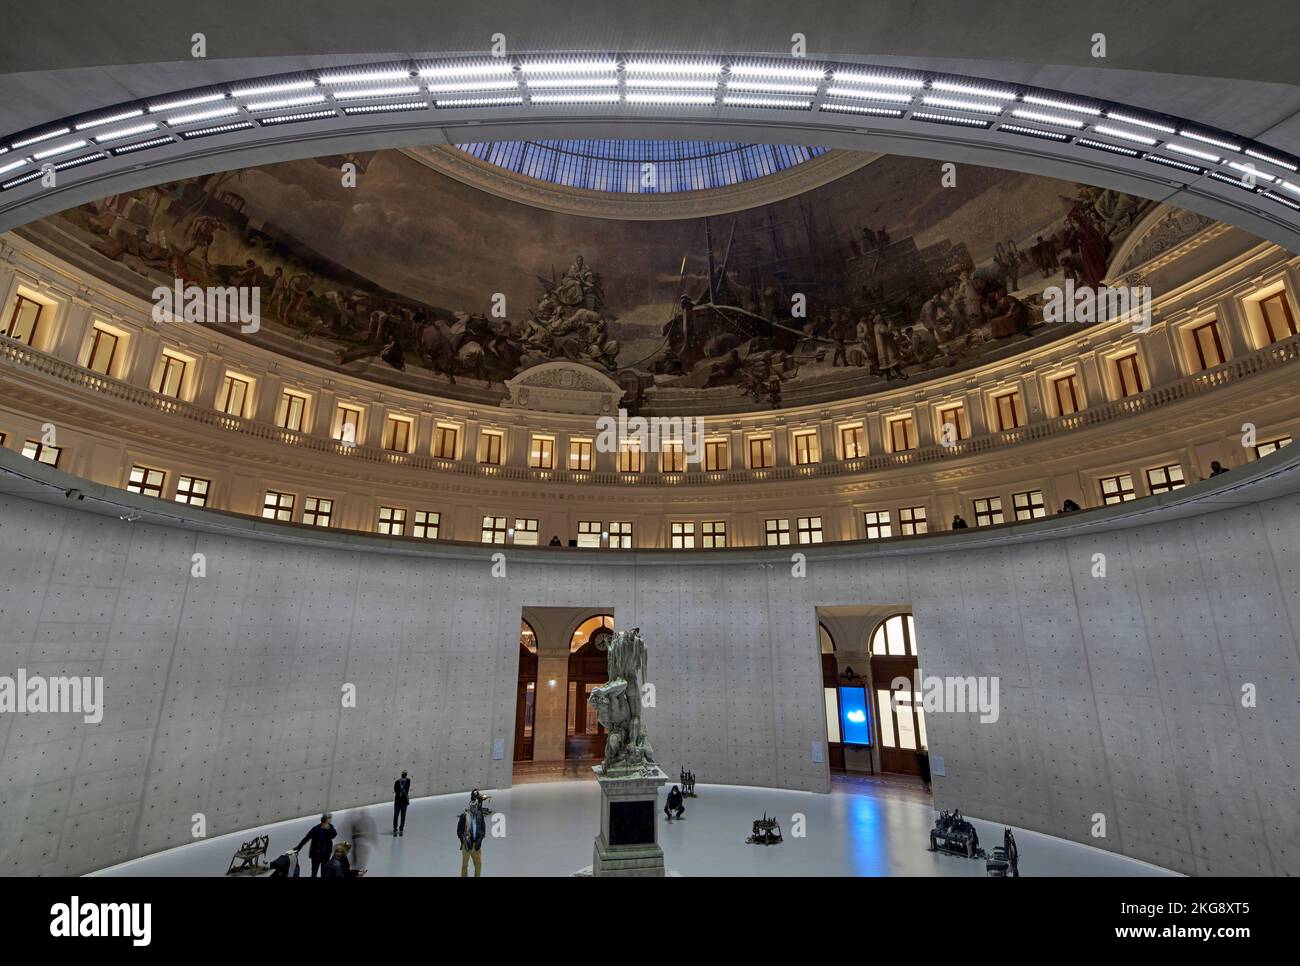 Hauptbereich von der mittleren Ebene. Bourse de Commerce, Paris, Frankreich. Architekt: Tadao Ando , 2021. Stockfoto